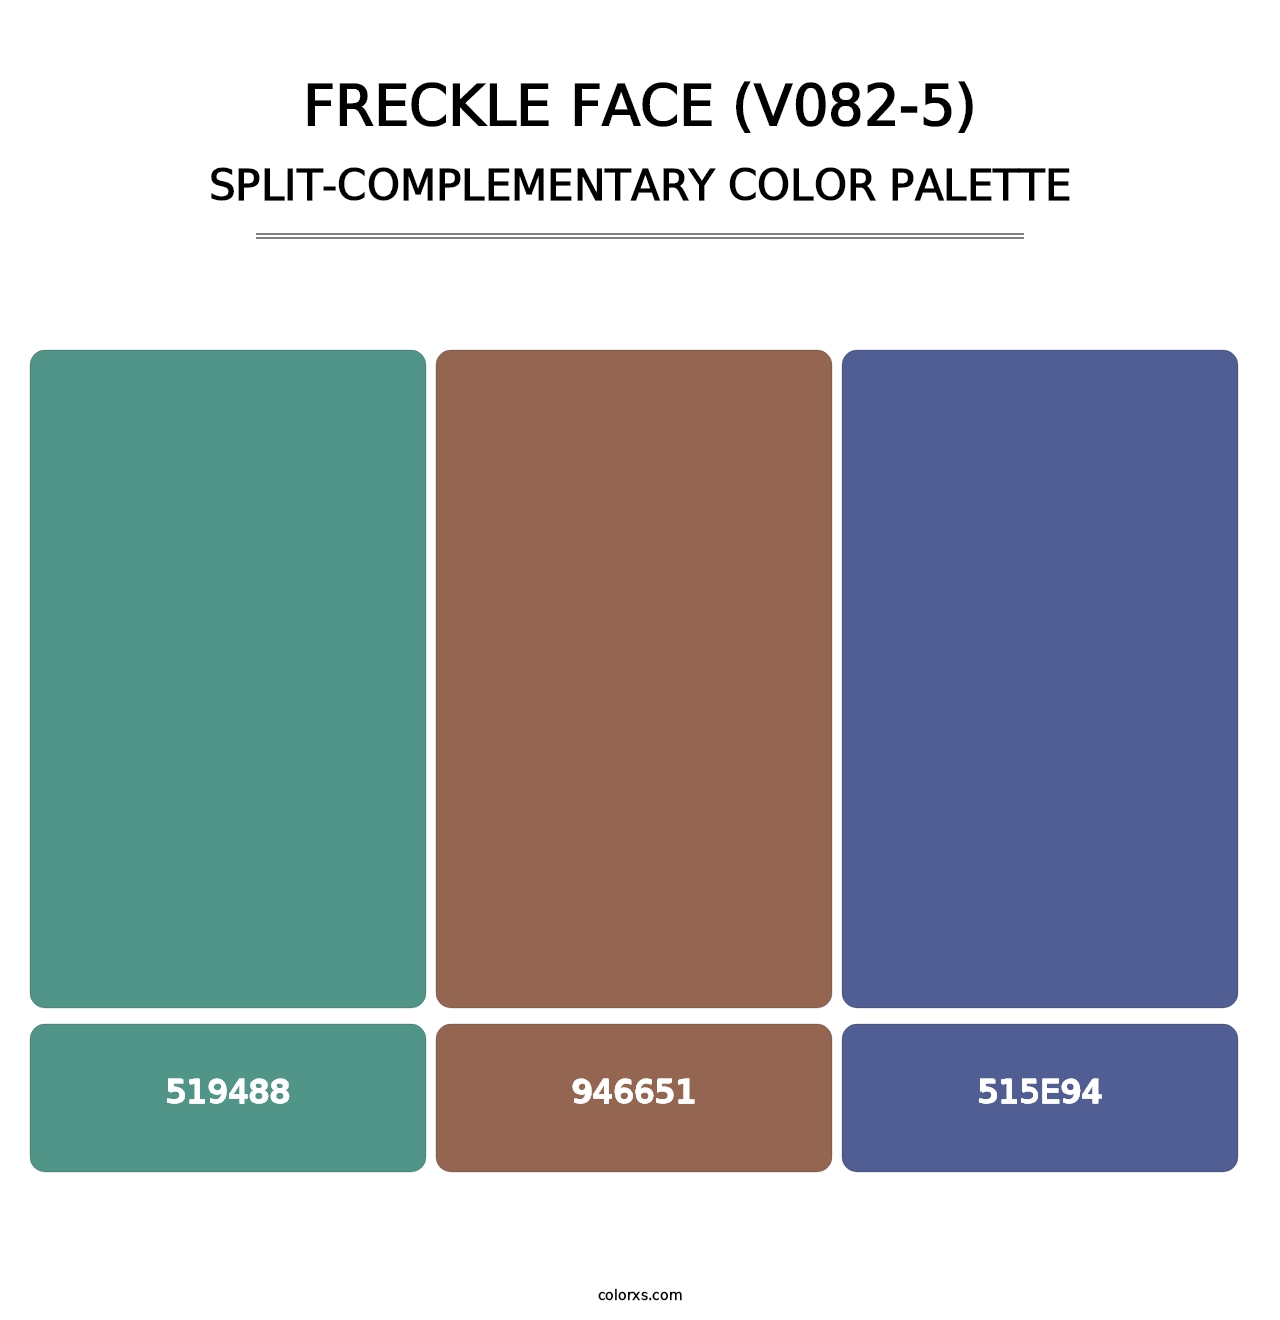 Freckle Face (V082-5) - Split-Complementary Color Palette